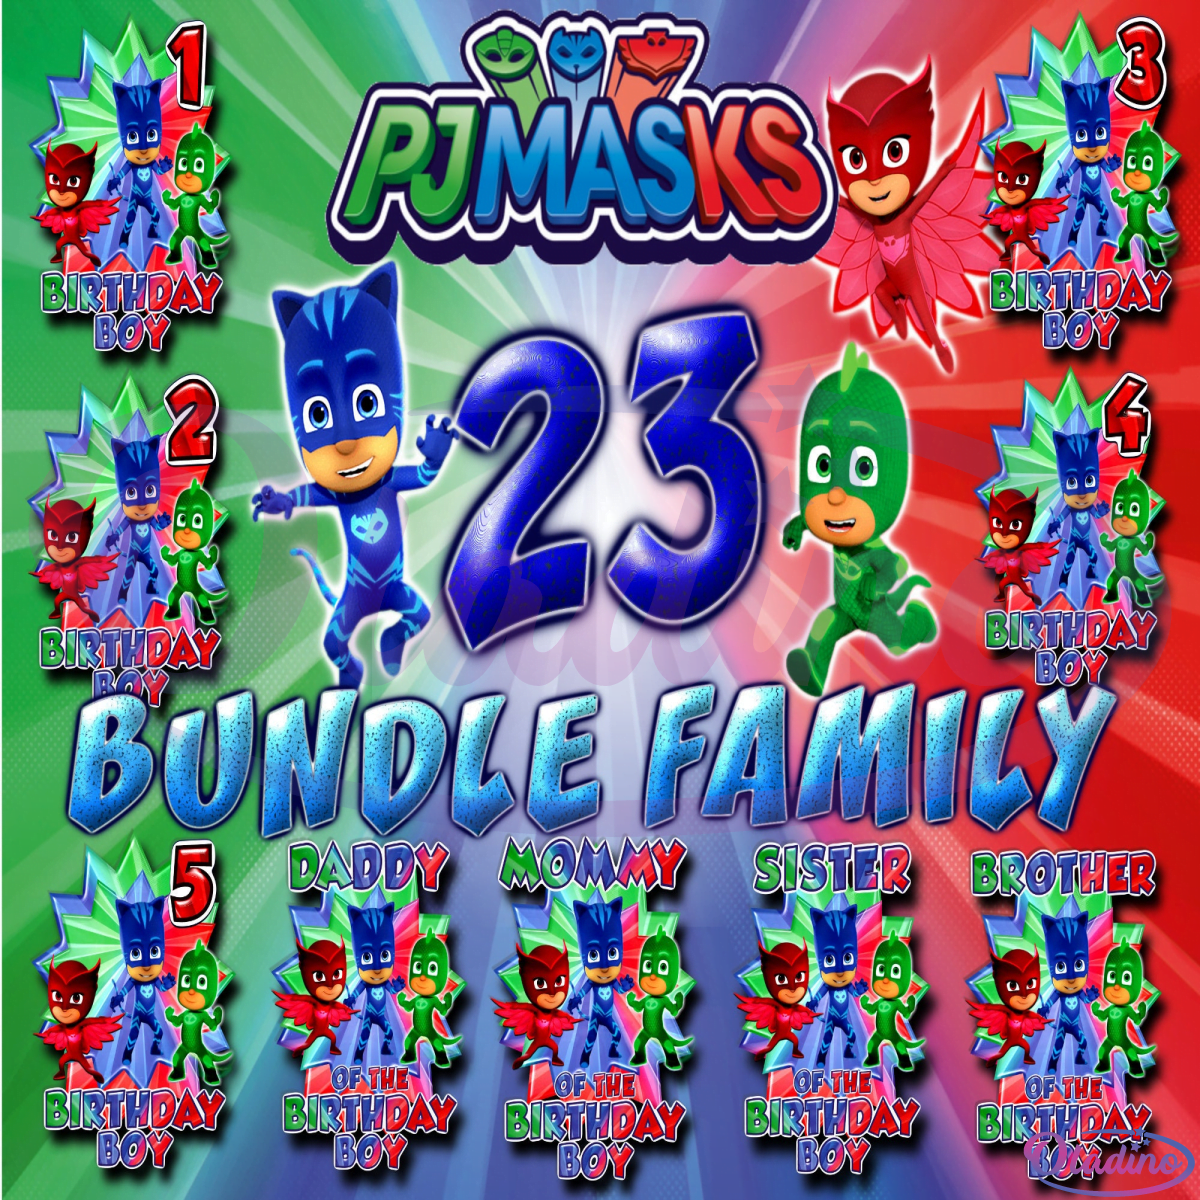 23 Family PJ Masks Bundle Png Digital File, PJ Masks Birthday Png